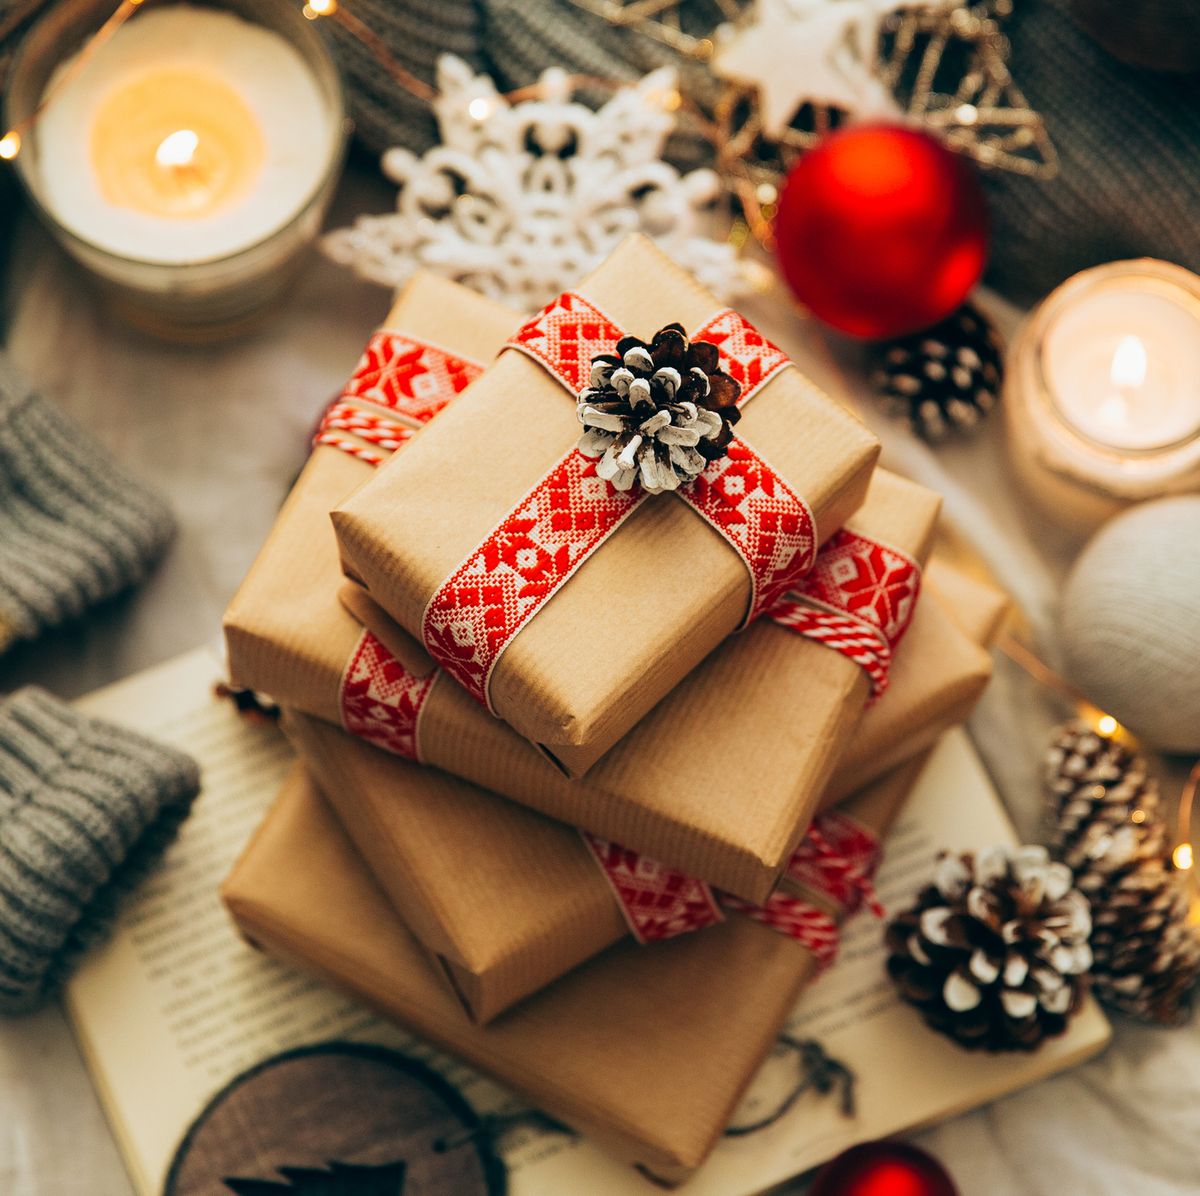 Regali di Natale tra amiche: cosa regalare - SFILATE